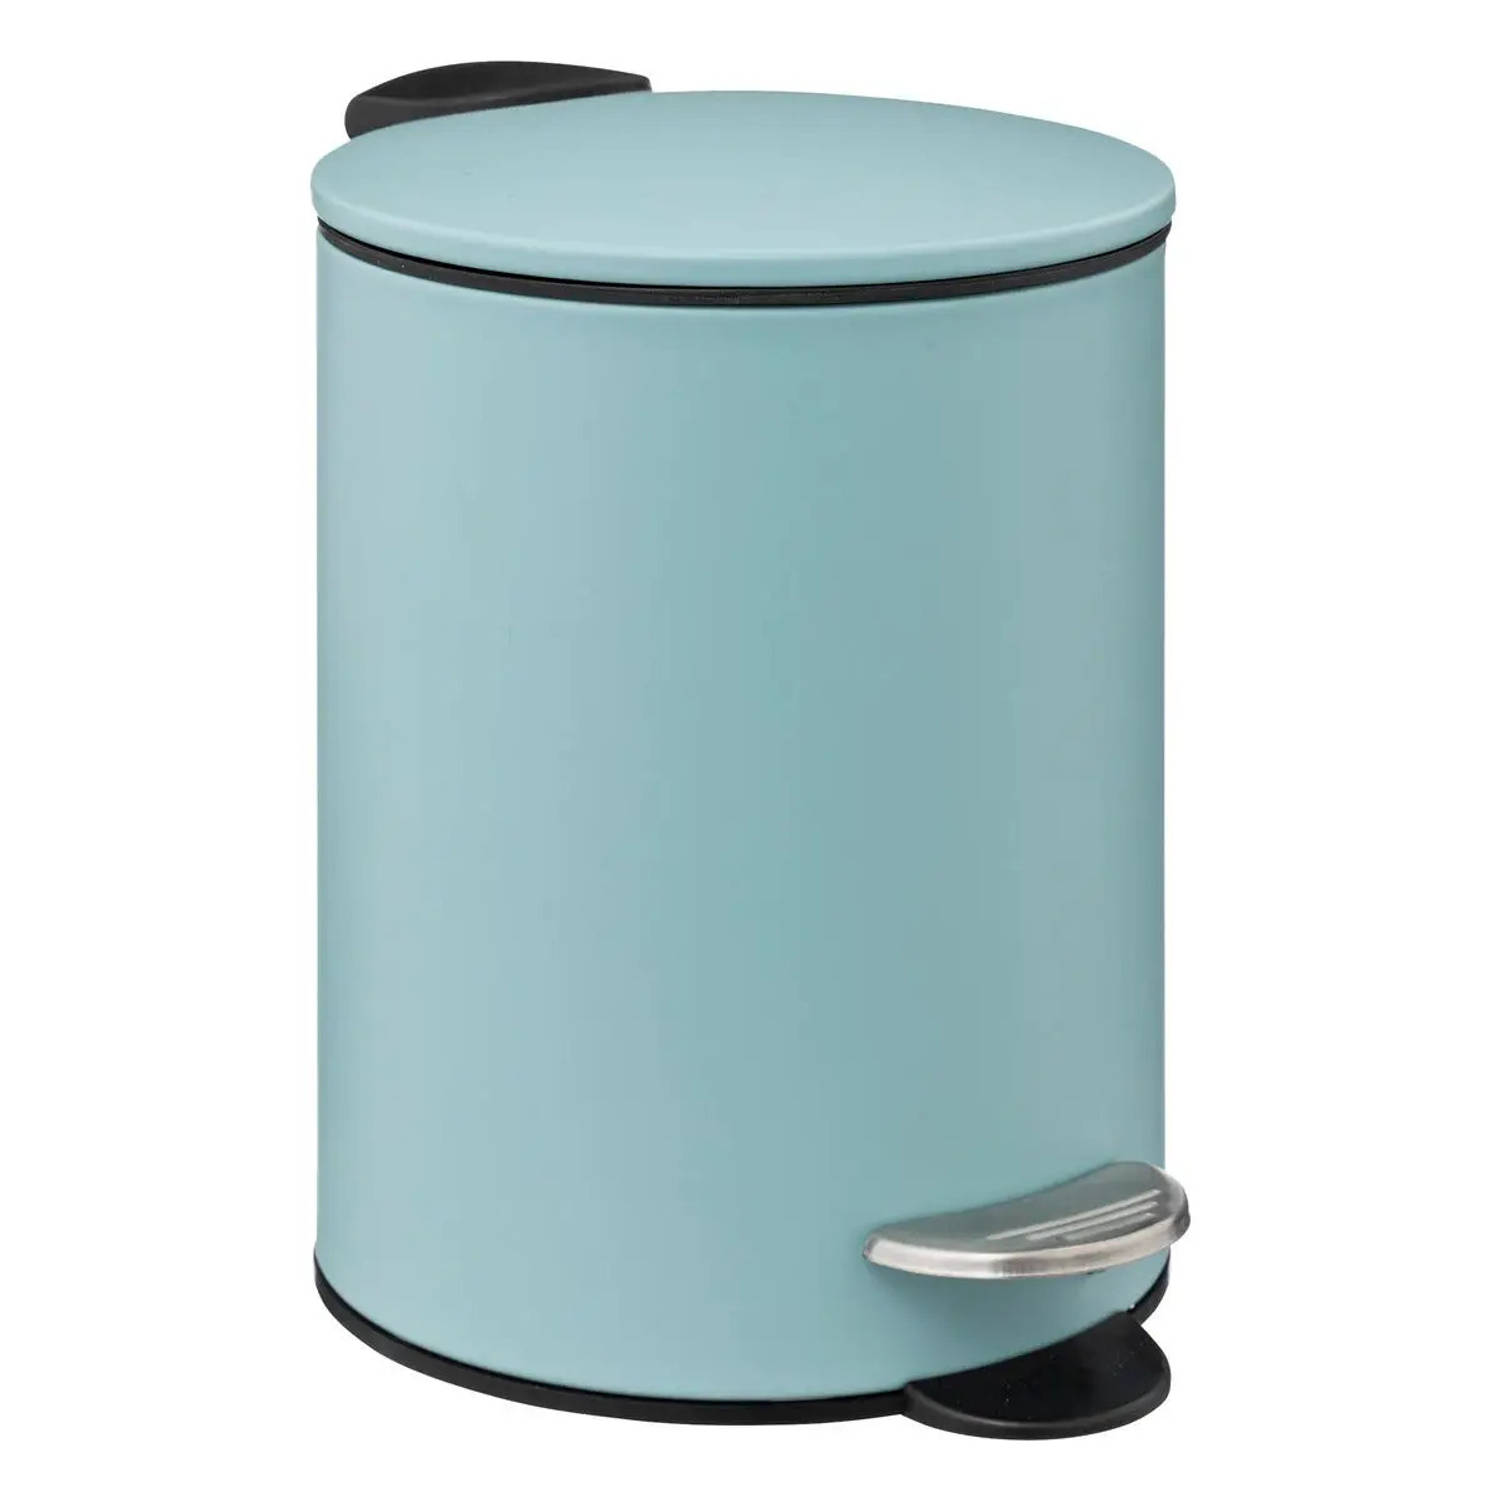 Prullenbak-pedaalemmer metaal ijsblauw 3 liter 16 x 25 cm Badkamer-toilet Pedaalemmers